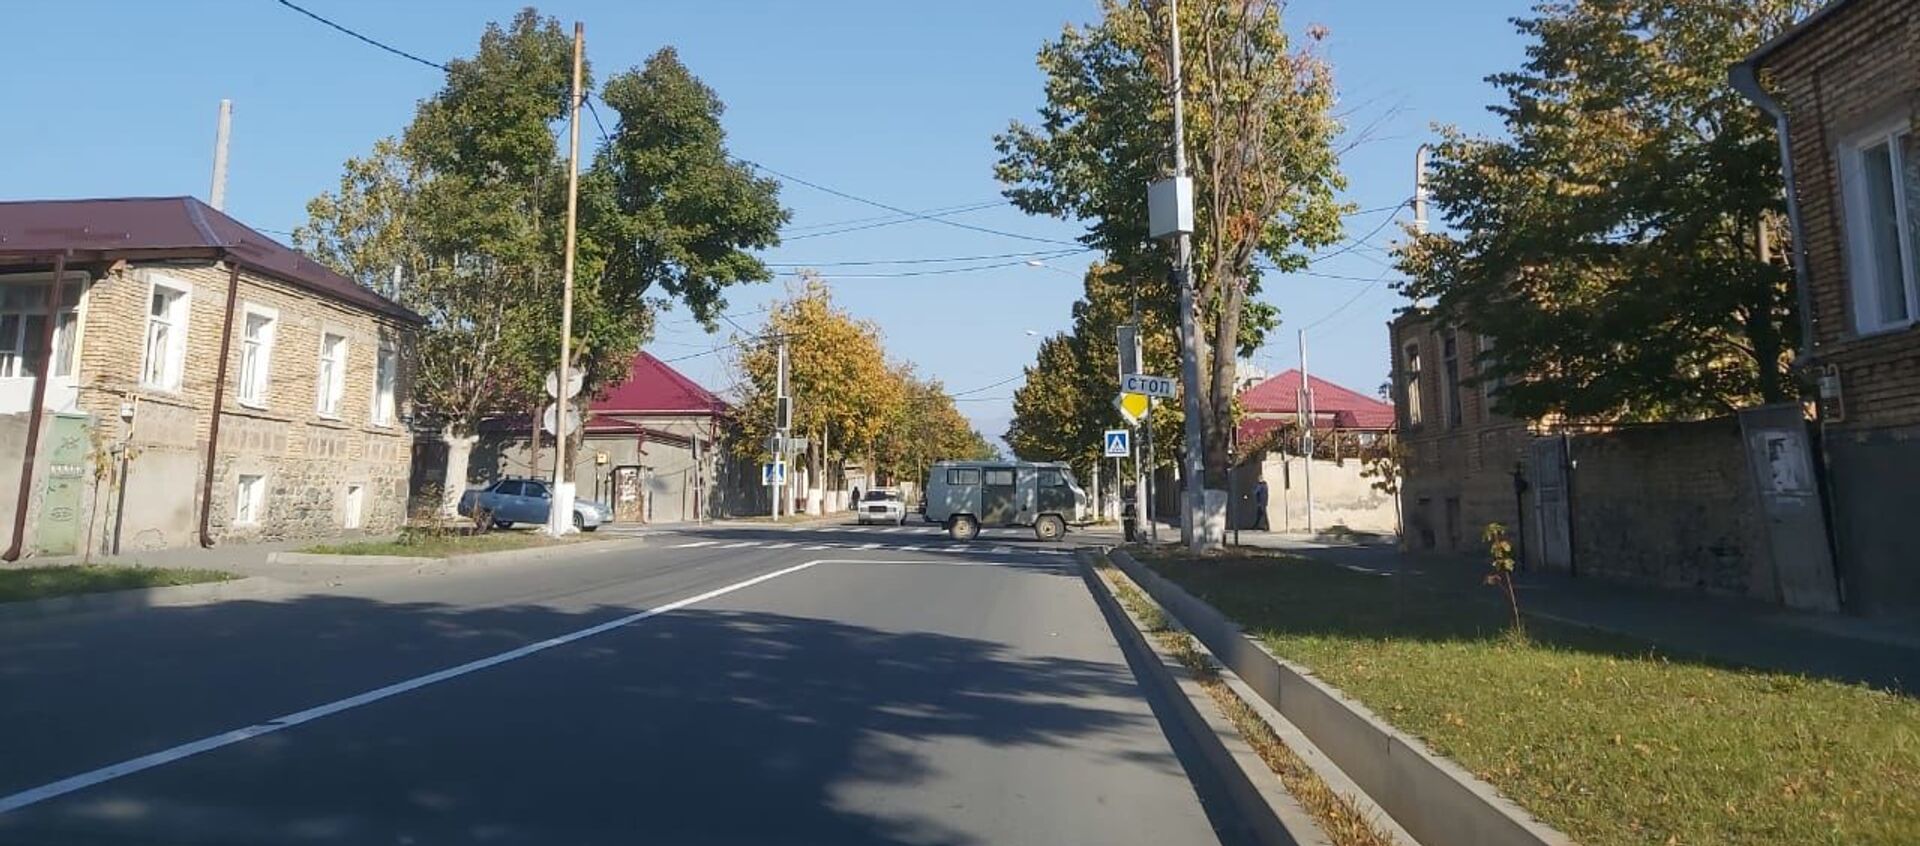 Перекресток улиц Сталина-Советская в Цхинвале - Sputnik Южная Осетия, 1920, 08.09.2021